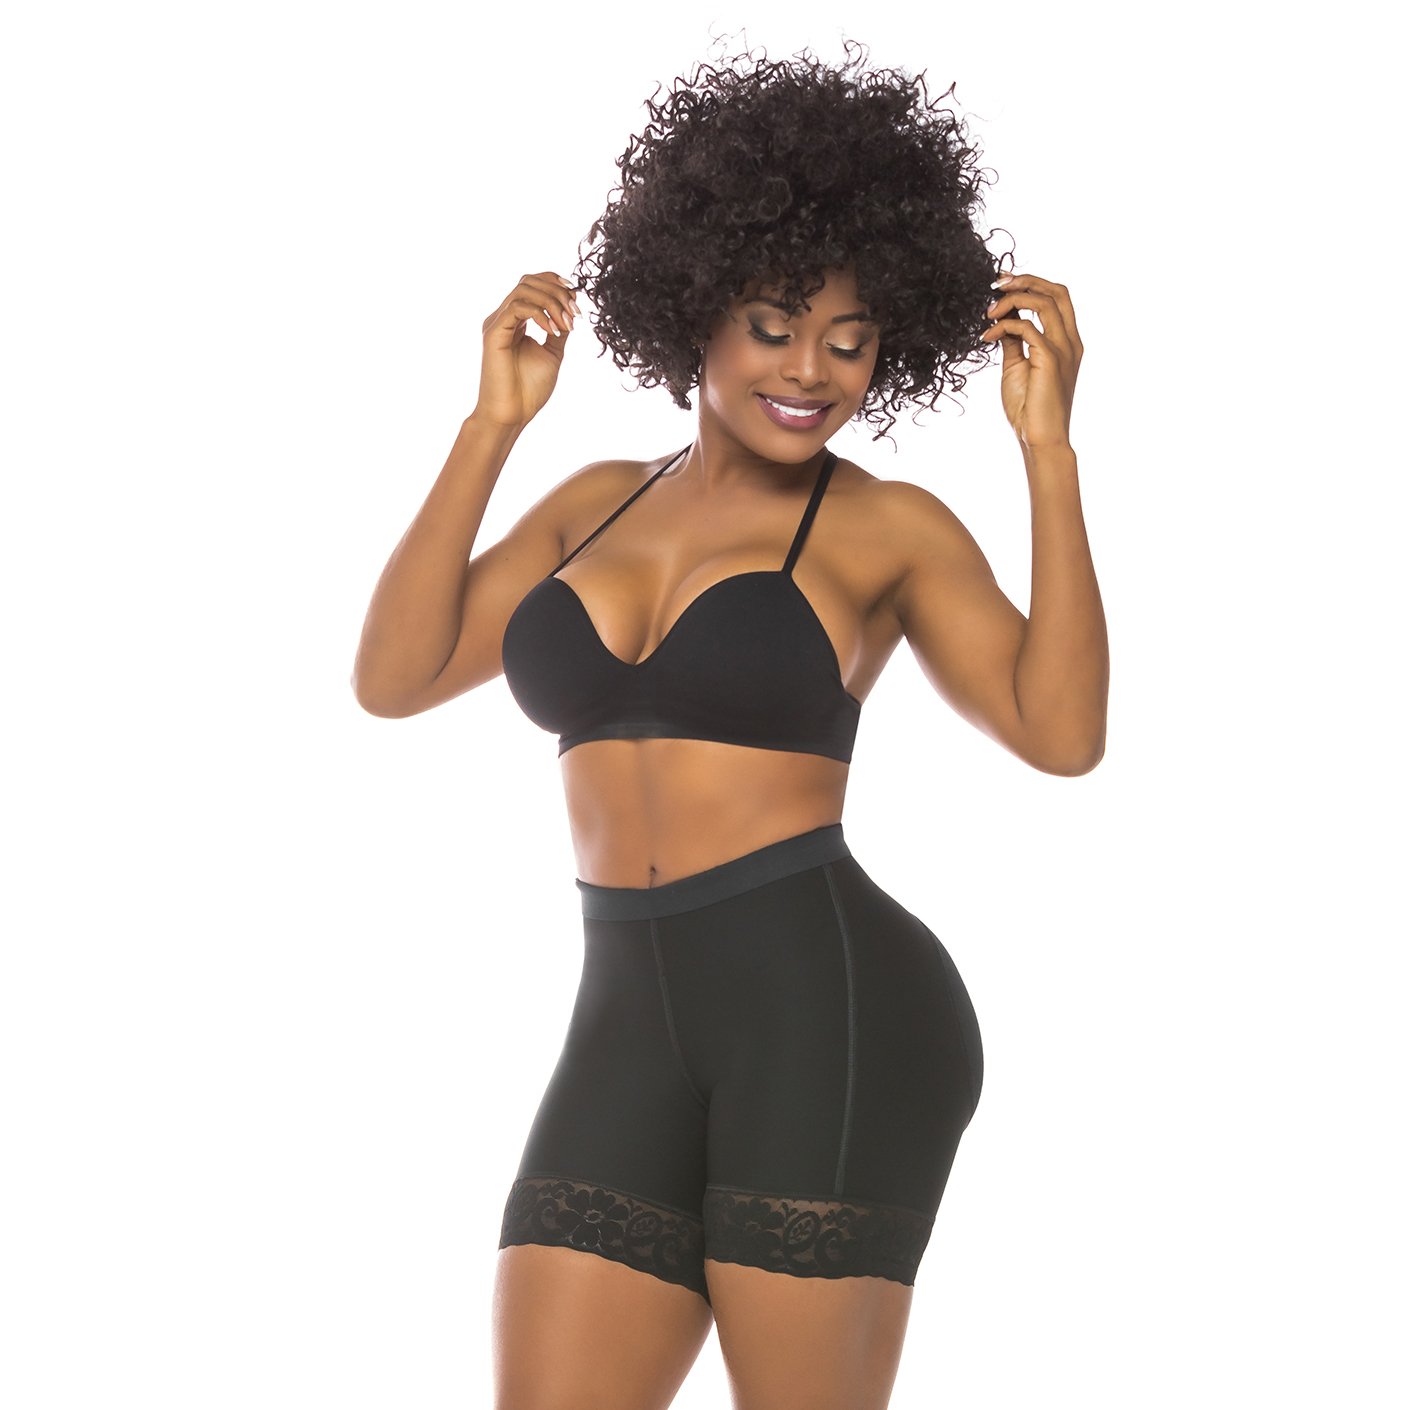 Salome 0218 Fajas Colombianas Reductoras Butt Lift Underwear Shapewear  Shorts for Women Black S 